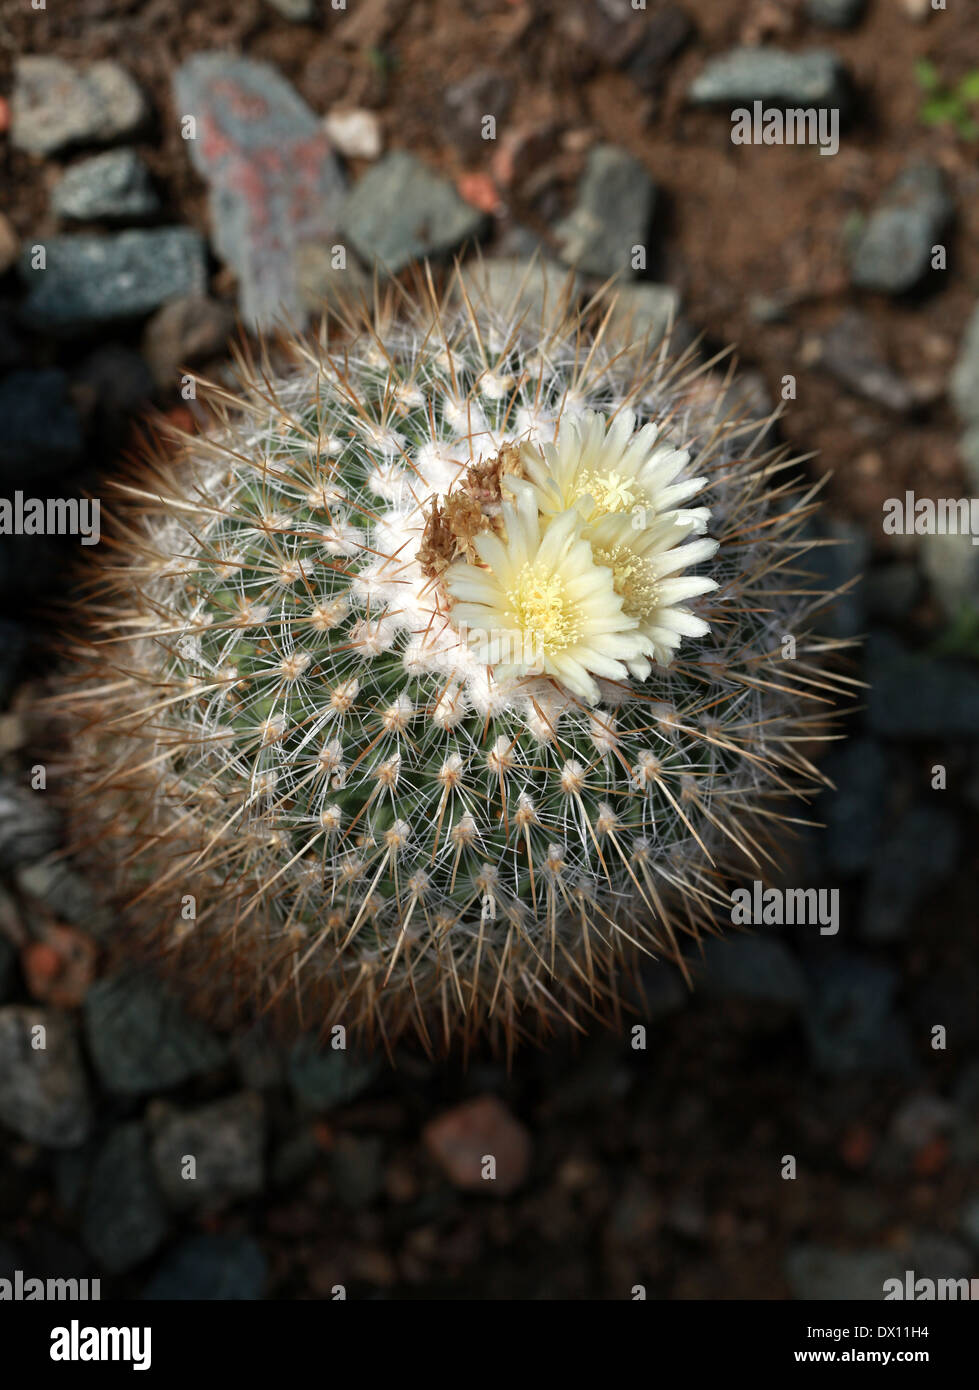 Stenocactus, Stenocactus vaupelianus, Cactaceae. North East Mexico. Stock Photo